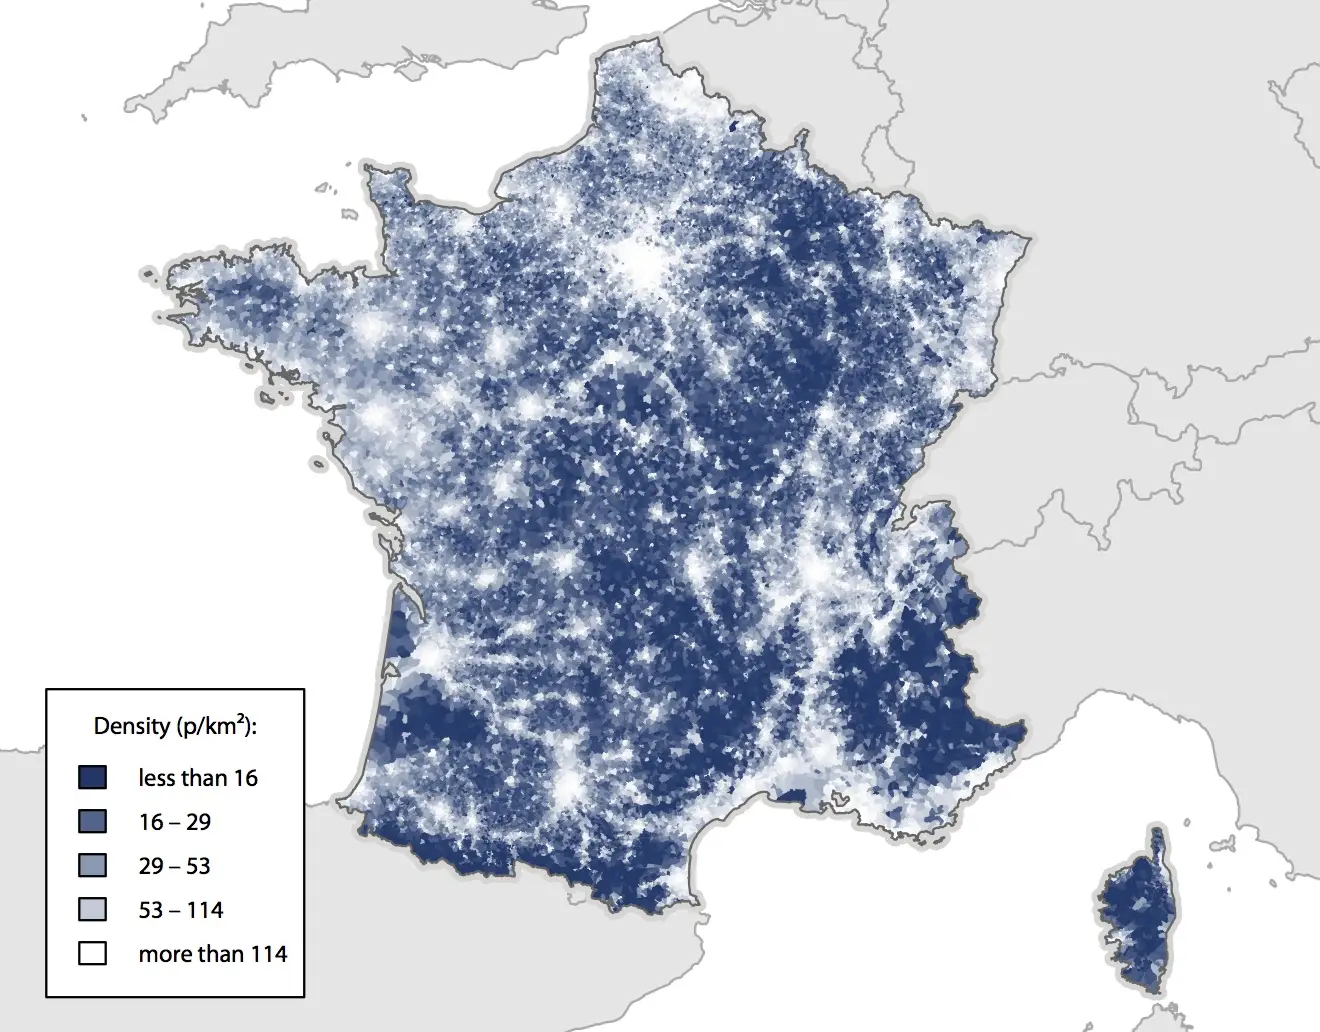 Population density in France